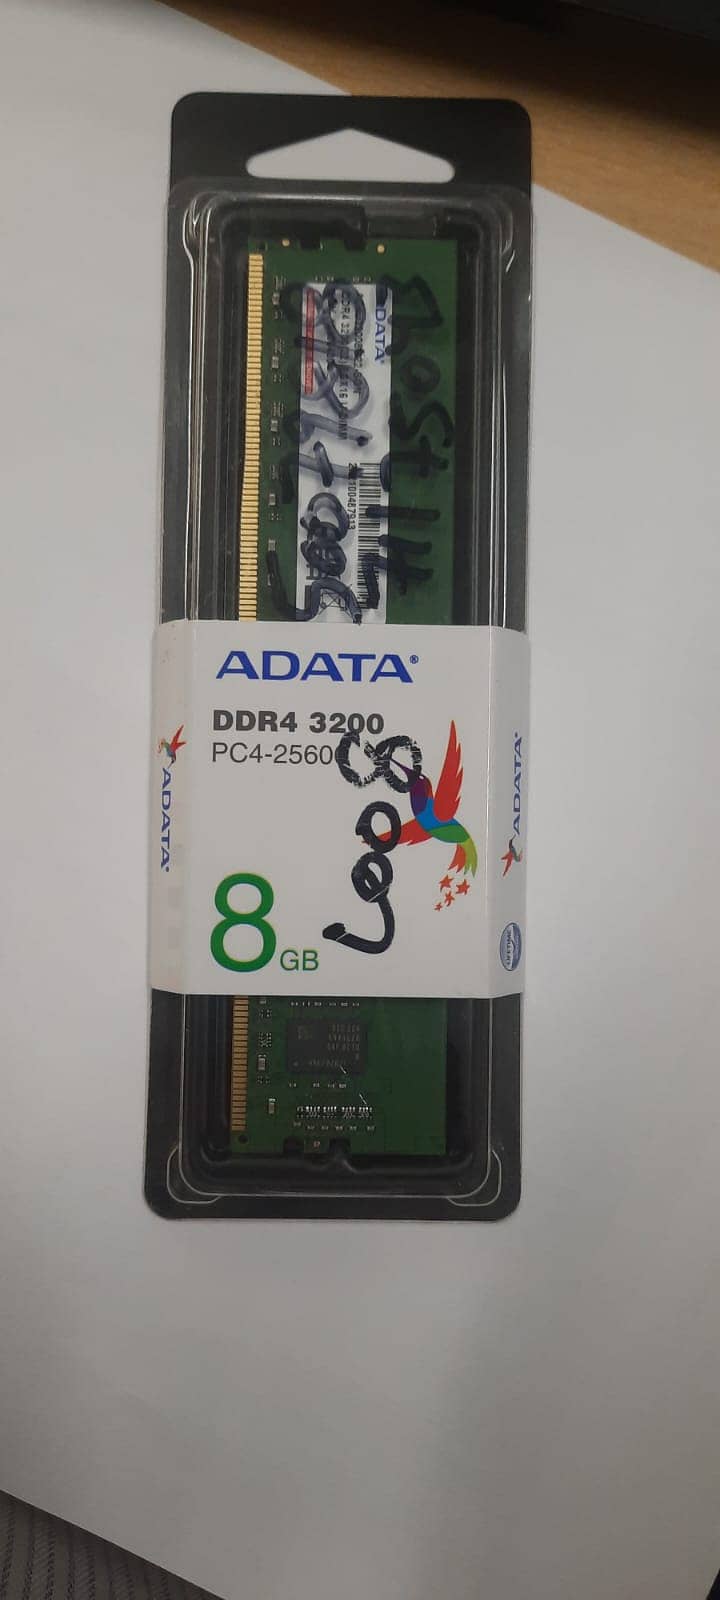 DDR4-3200, PC42560 0